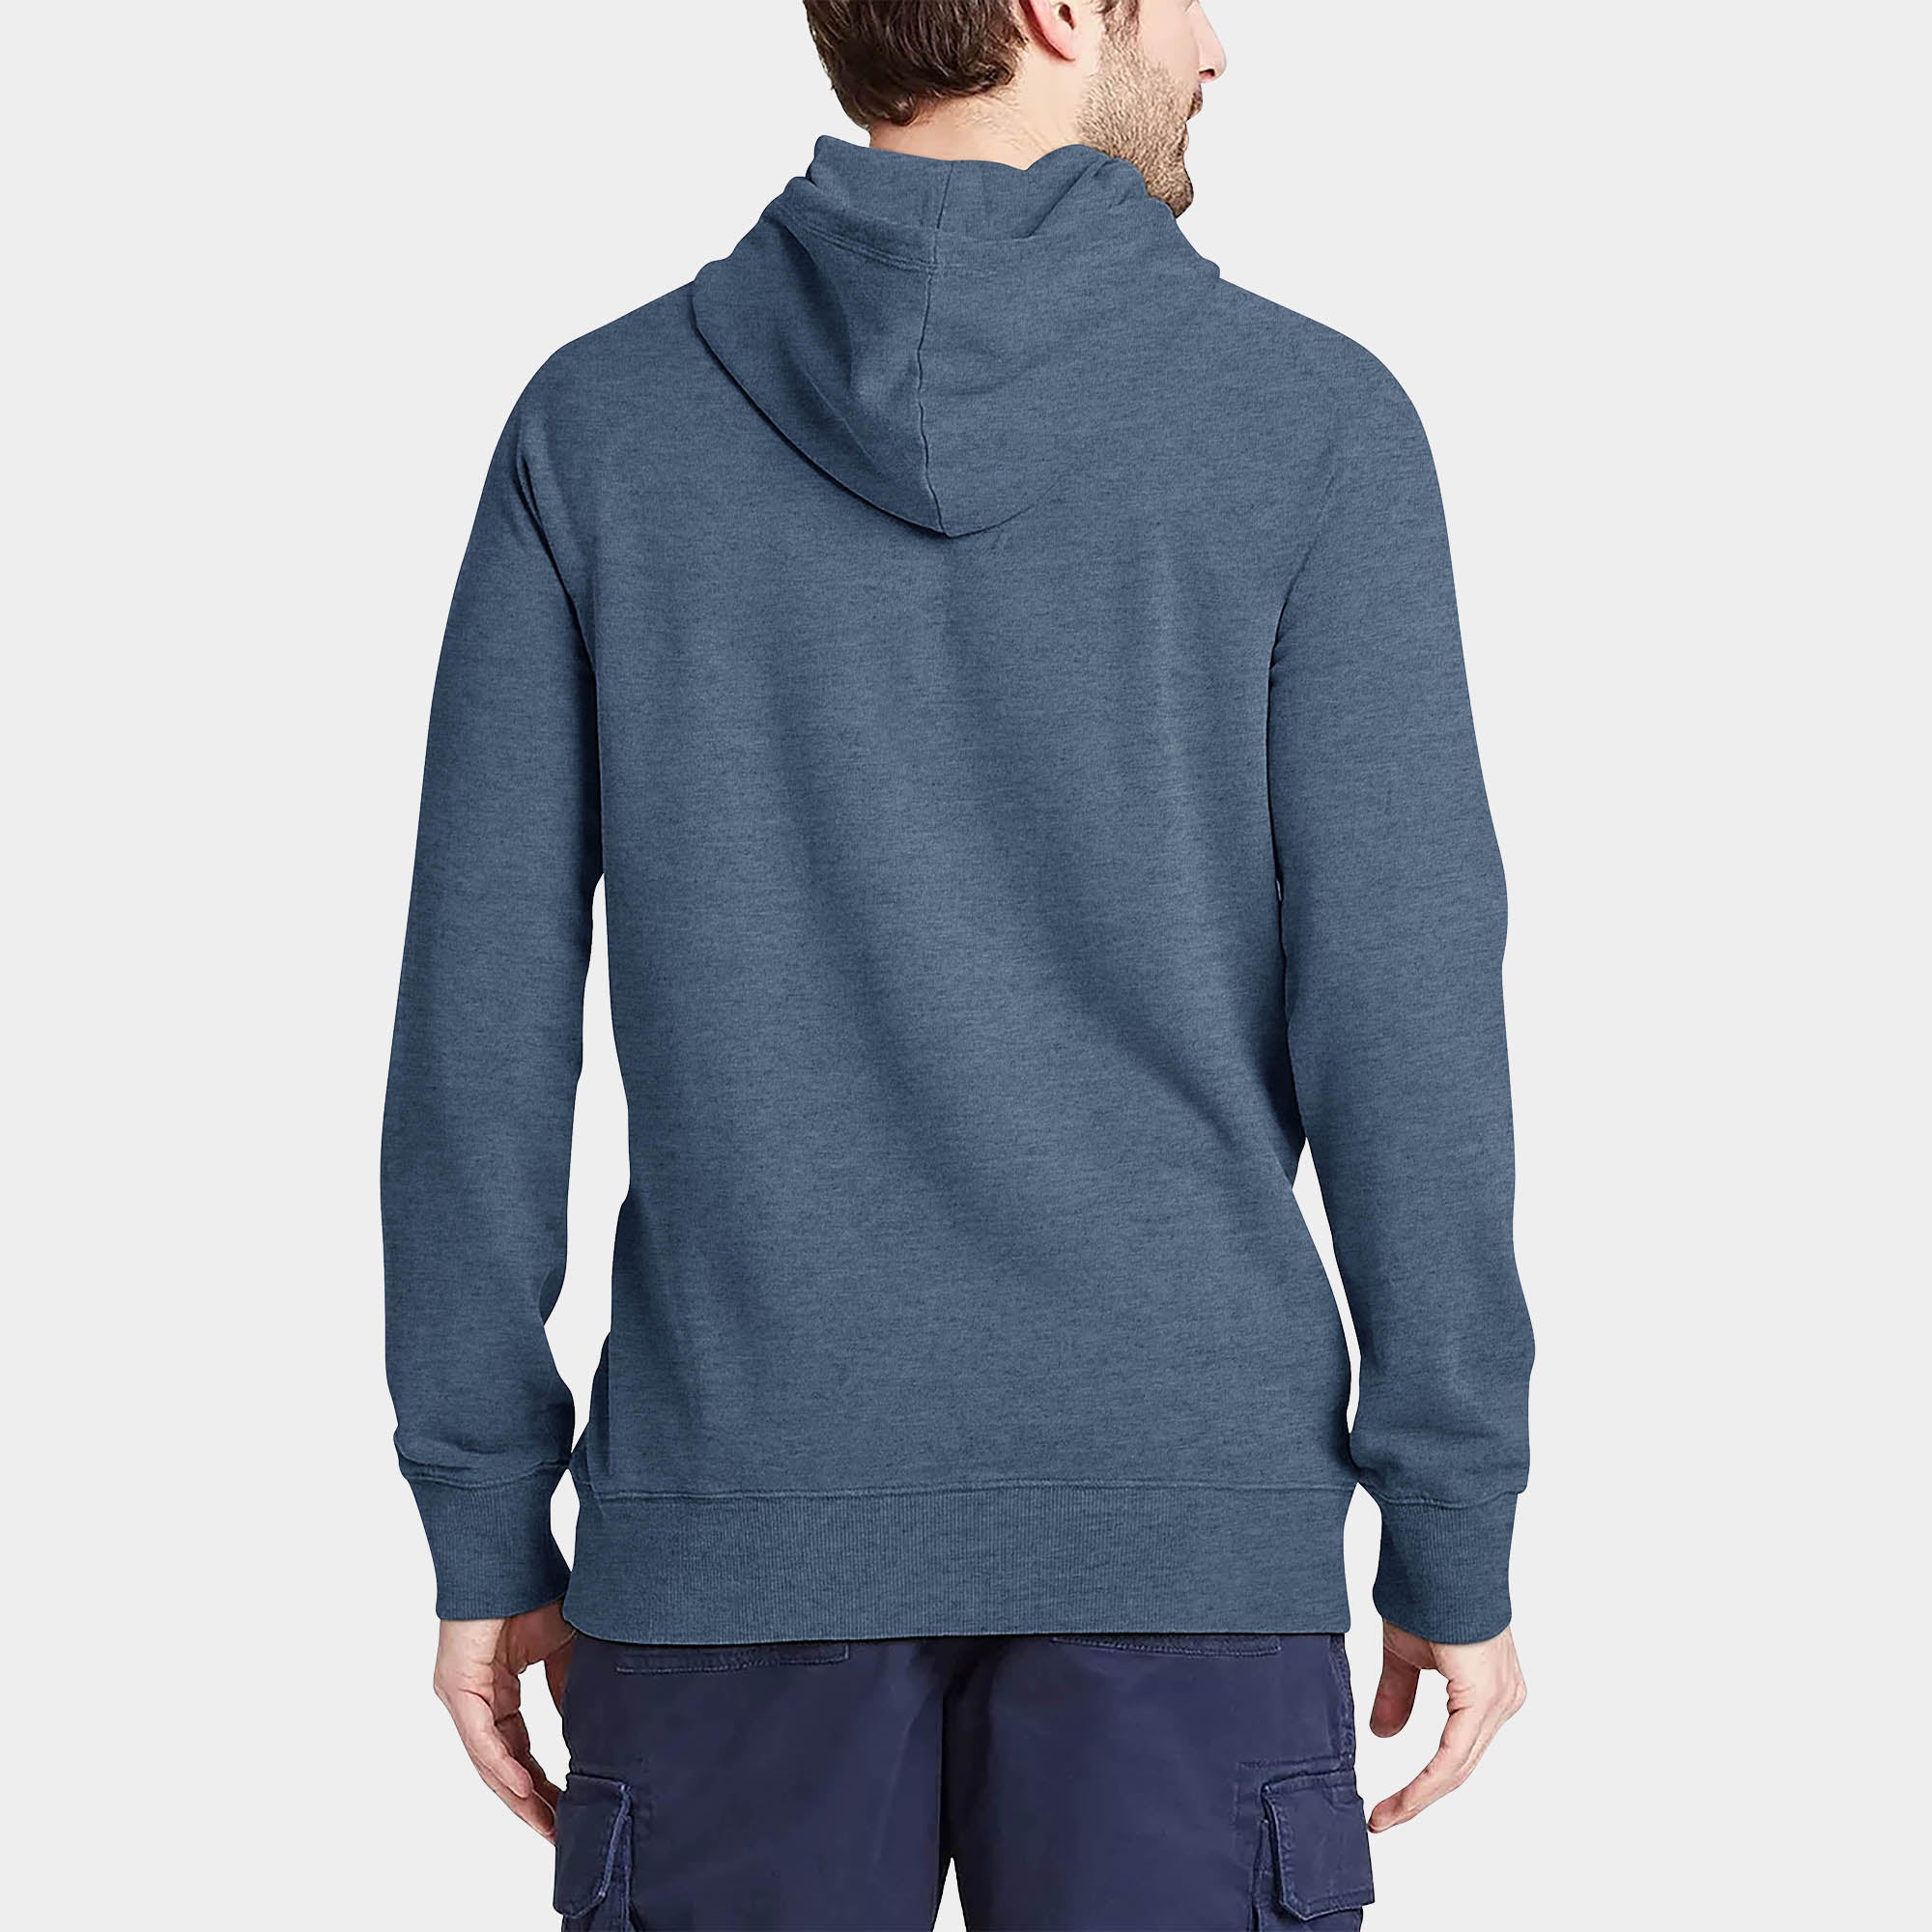 hoodie_hoodies for men_hooded sweatshirt_custom hoodies_cheap hoodies_couple hoodies_pullover hoodie_mens pullover hoodie_Denim